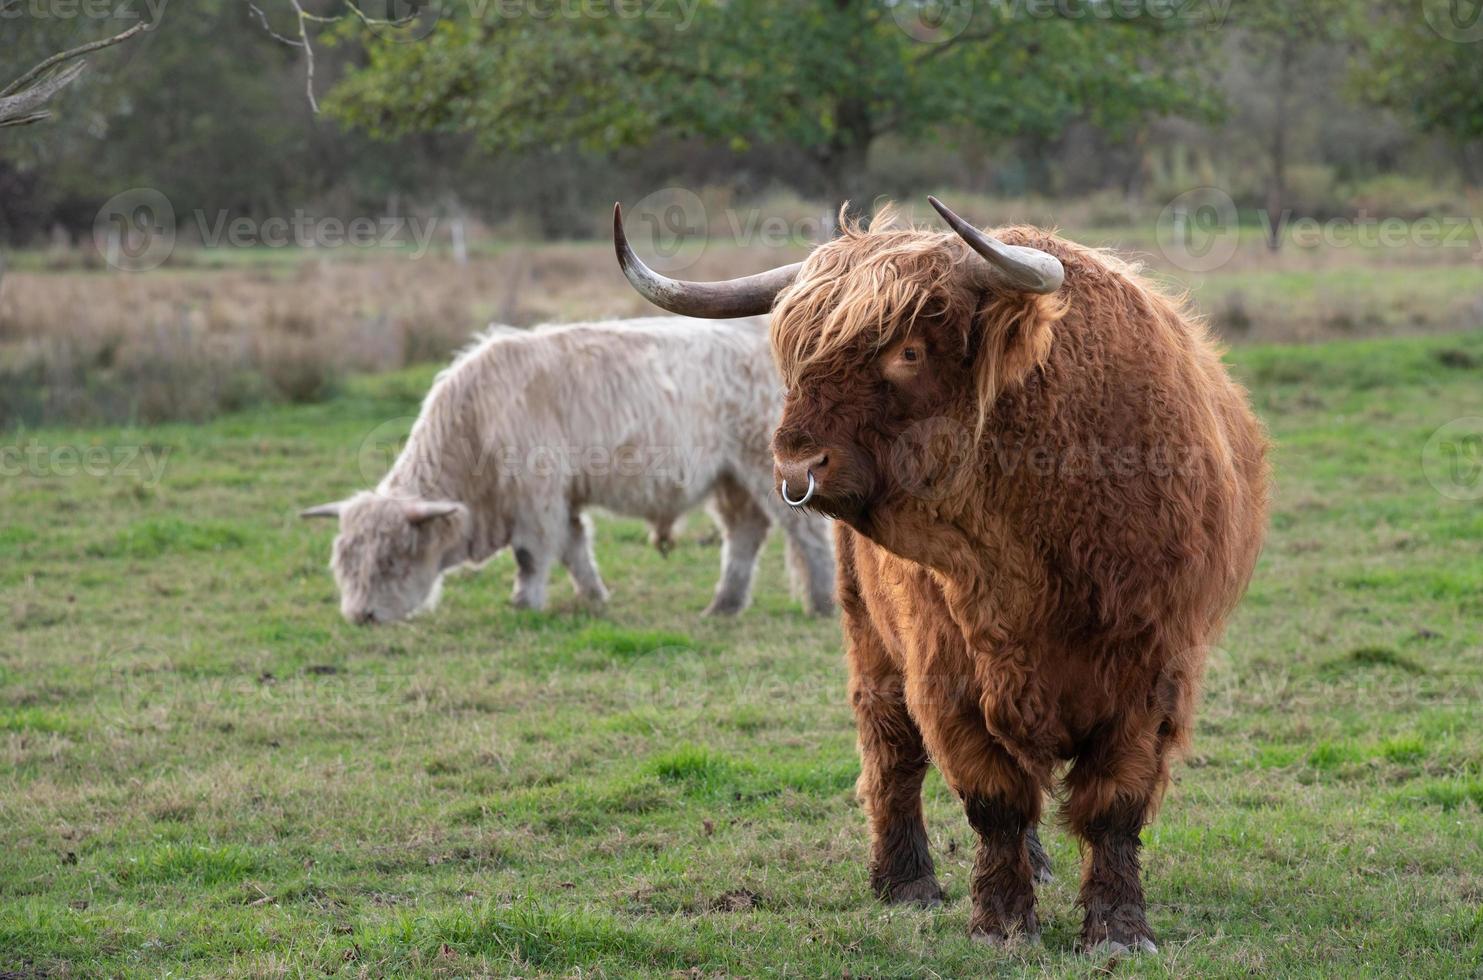 um touro galloway marrom com um casaco comprido, chifres e um piercing no nariz fica em um pasto verde na frente de um gado branco. foto